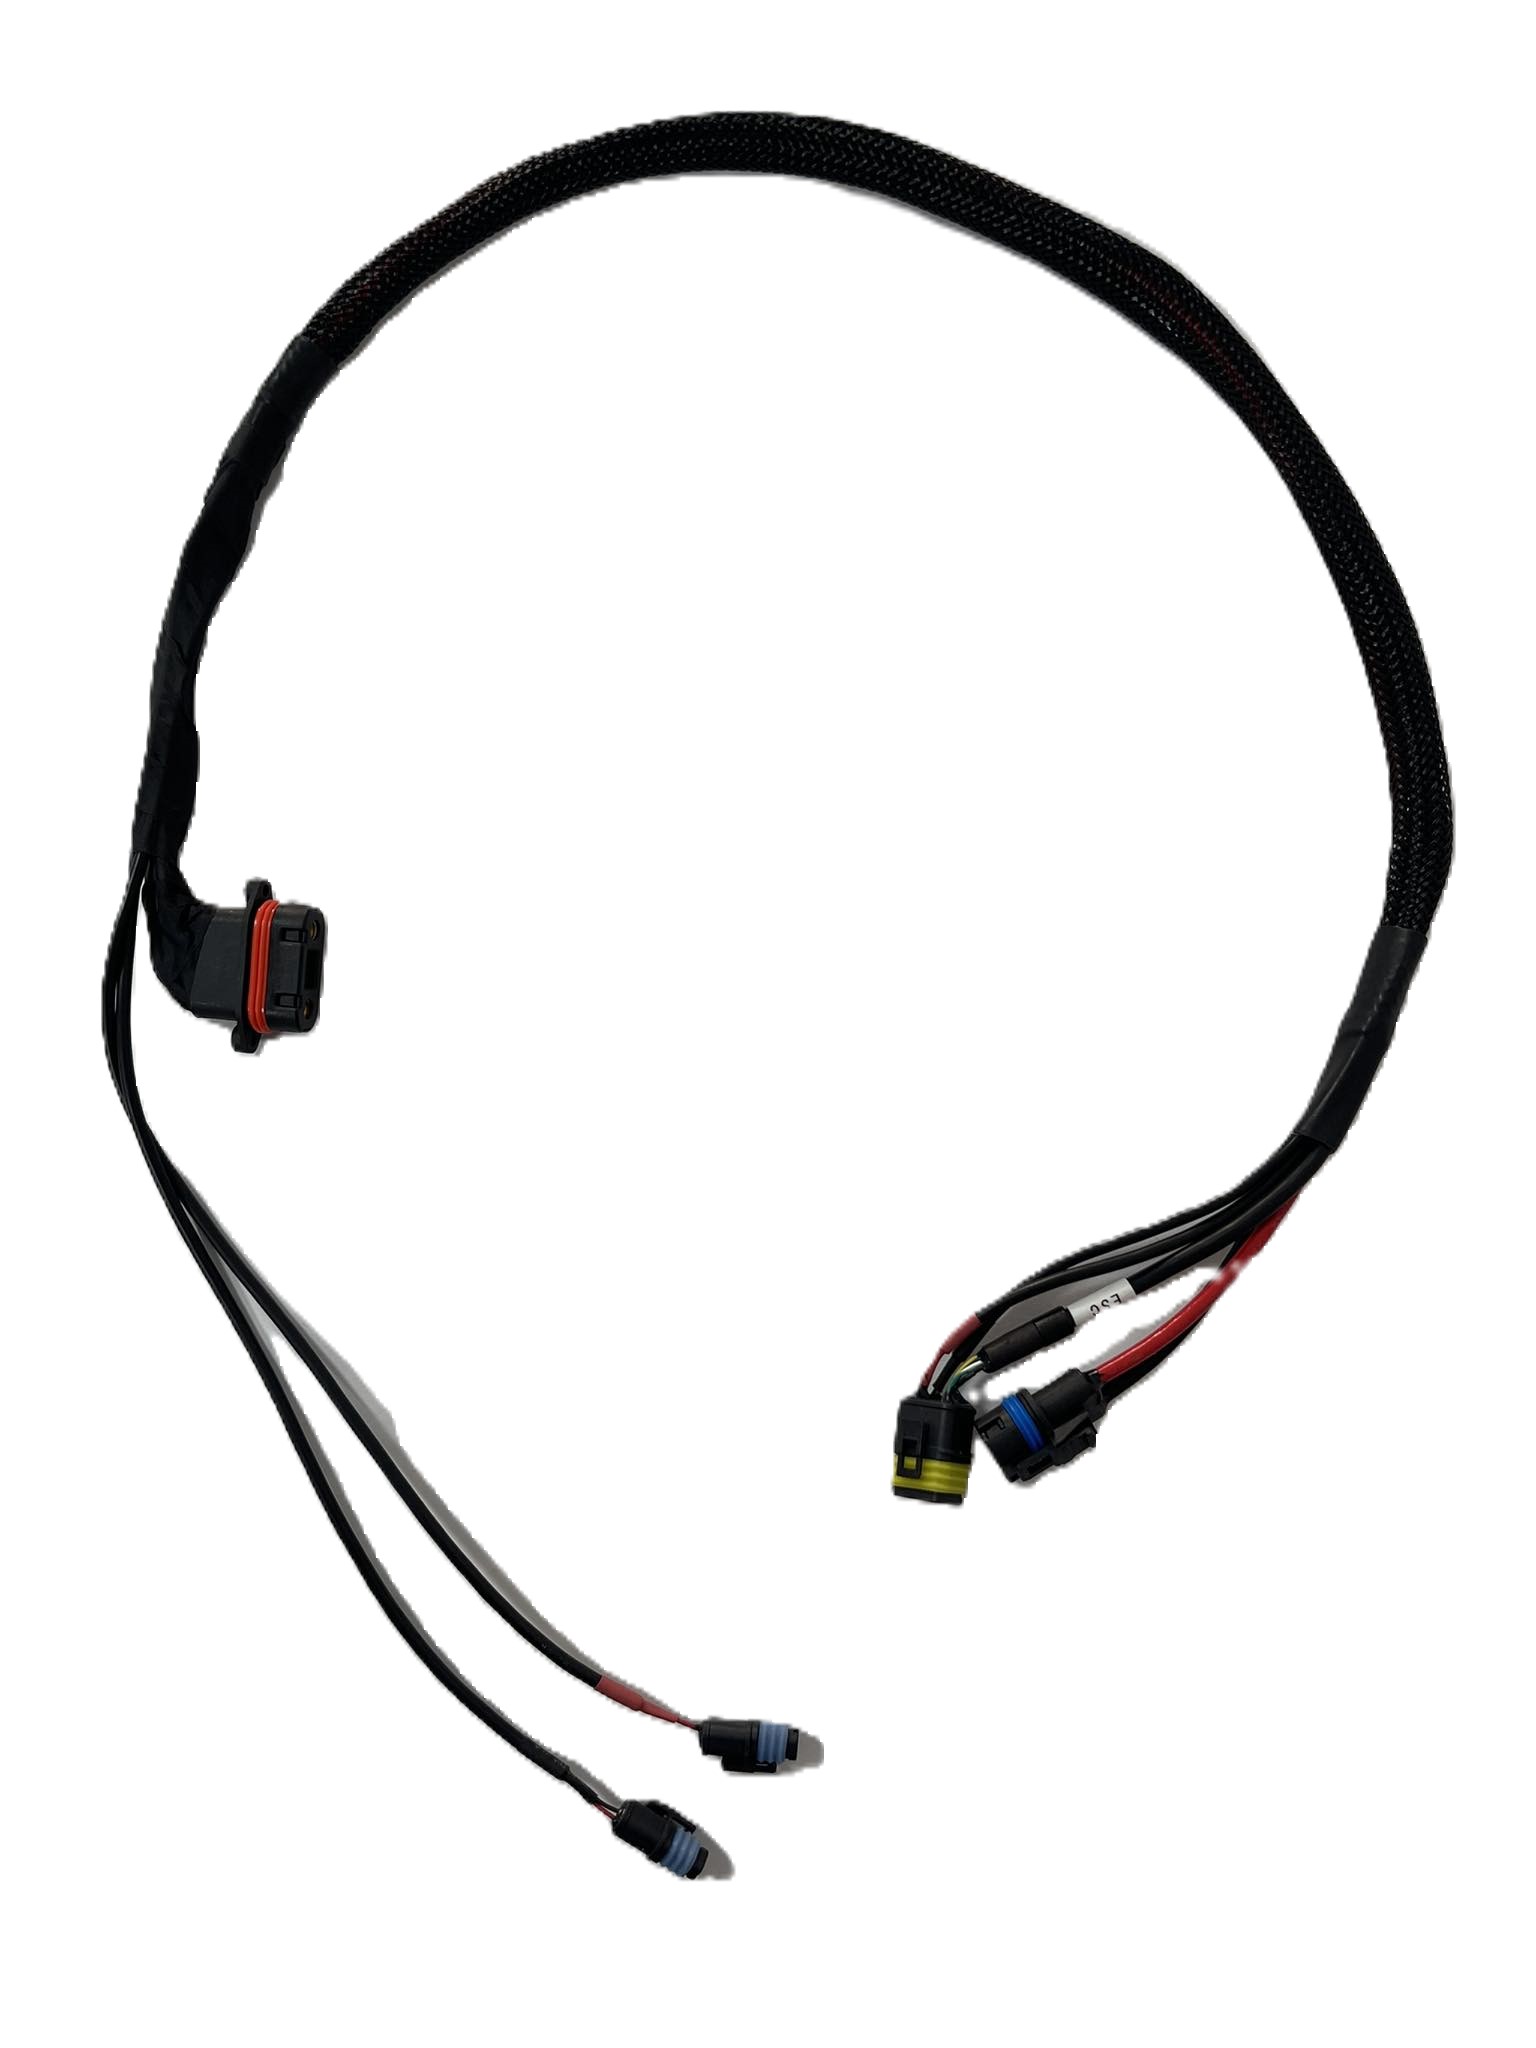 DJI Agras T30 - Cable compuesto Brazo